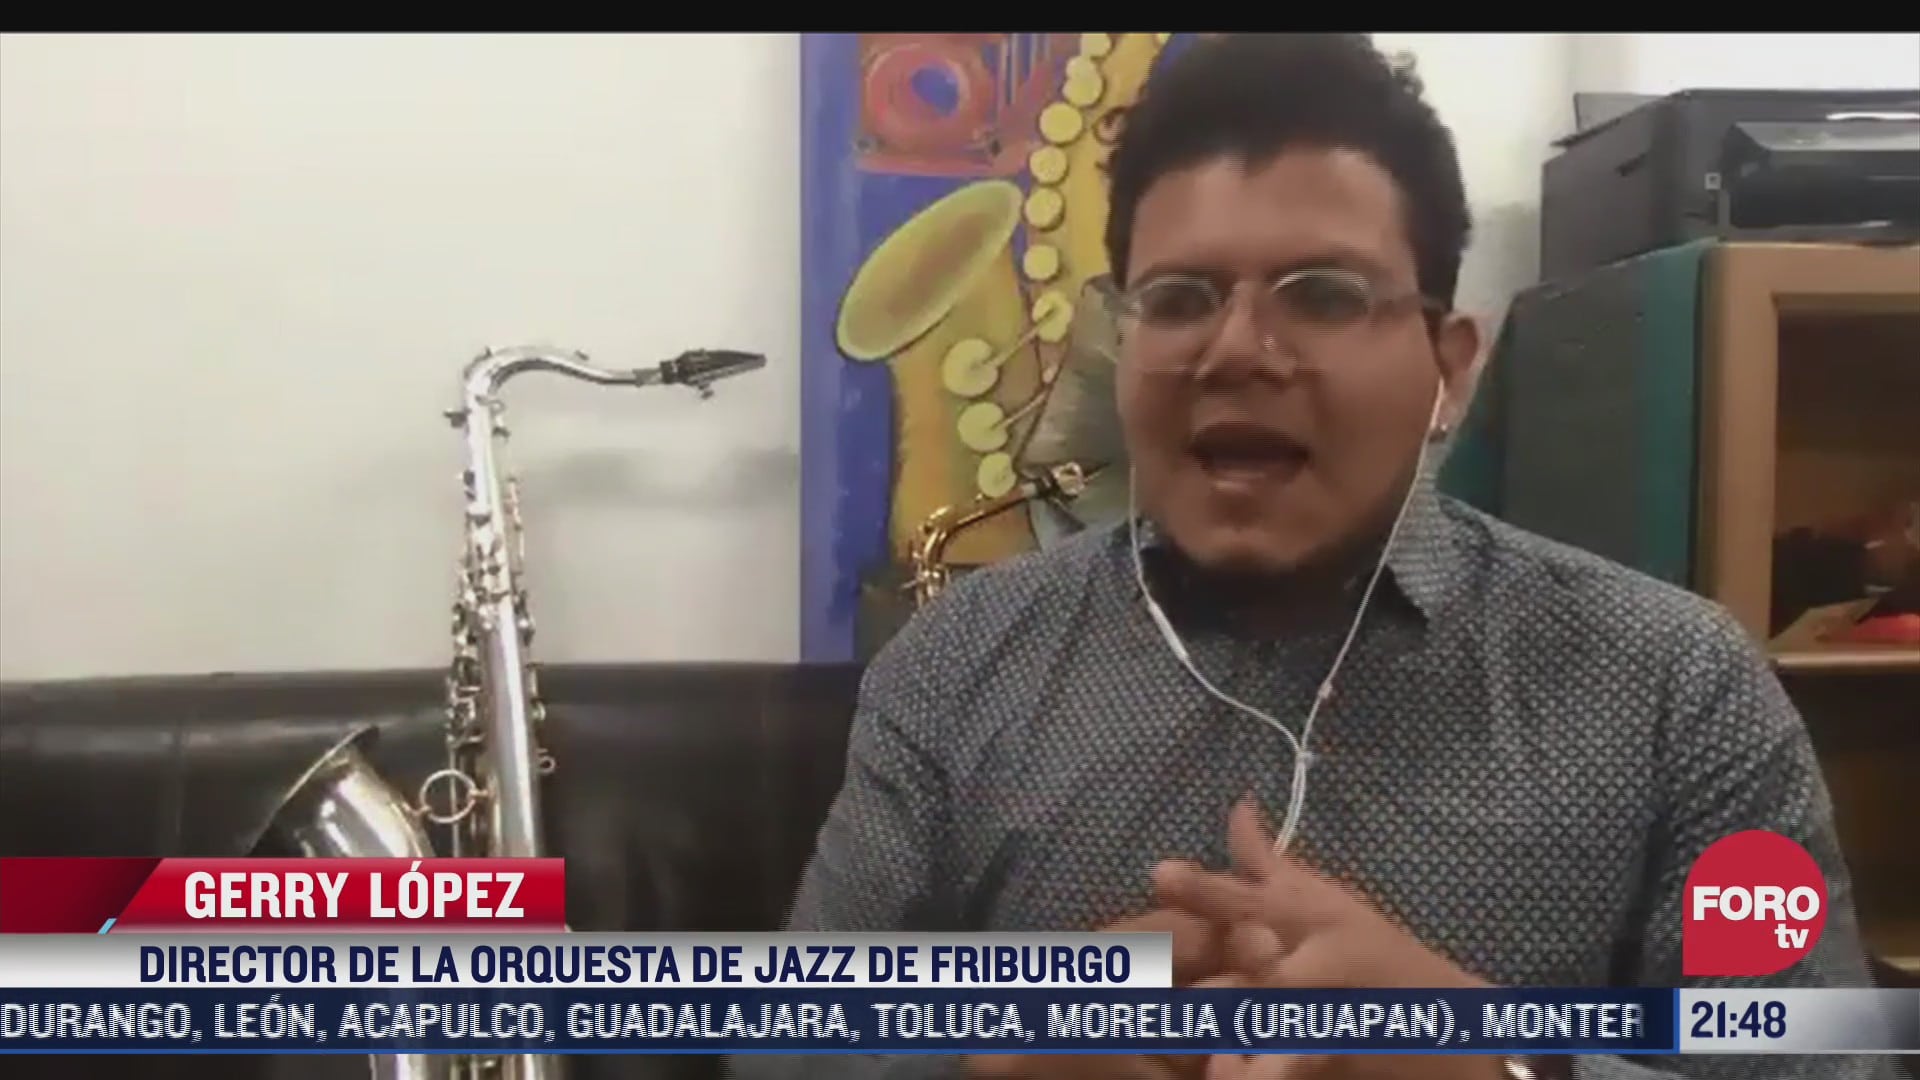 saxofonista mexicano es nombrado director de orquesta de jazz de friburgo